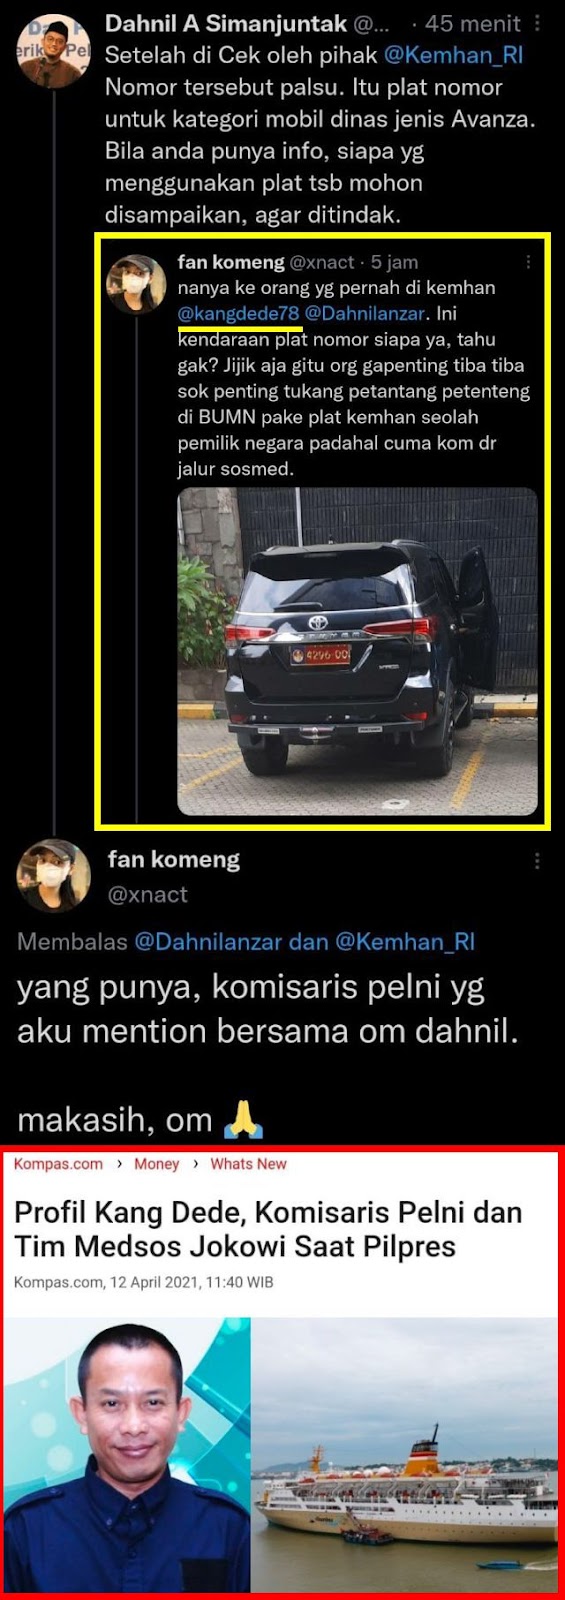 Dunia maya kembali dihebohkan dengan laporan mobil Fortuner hitam memakai pelat nomor khus NAH LOH!! Dugaan Tindak Pidana Pemalsuan Plat Nomor Kemenham, Gerakan Mahasiswa Jakarta Hari Ini Gelar Aksi Tuntut Kang Dede Komisaris Pelni Dipecat dan Diusut Polisi